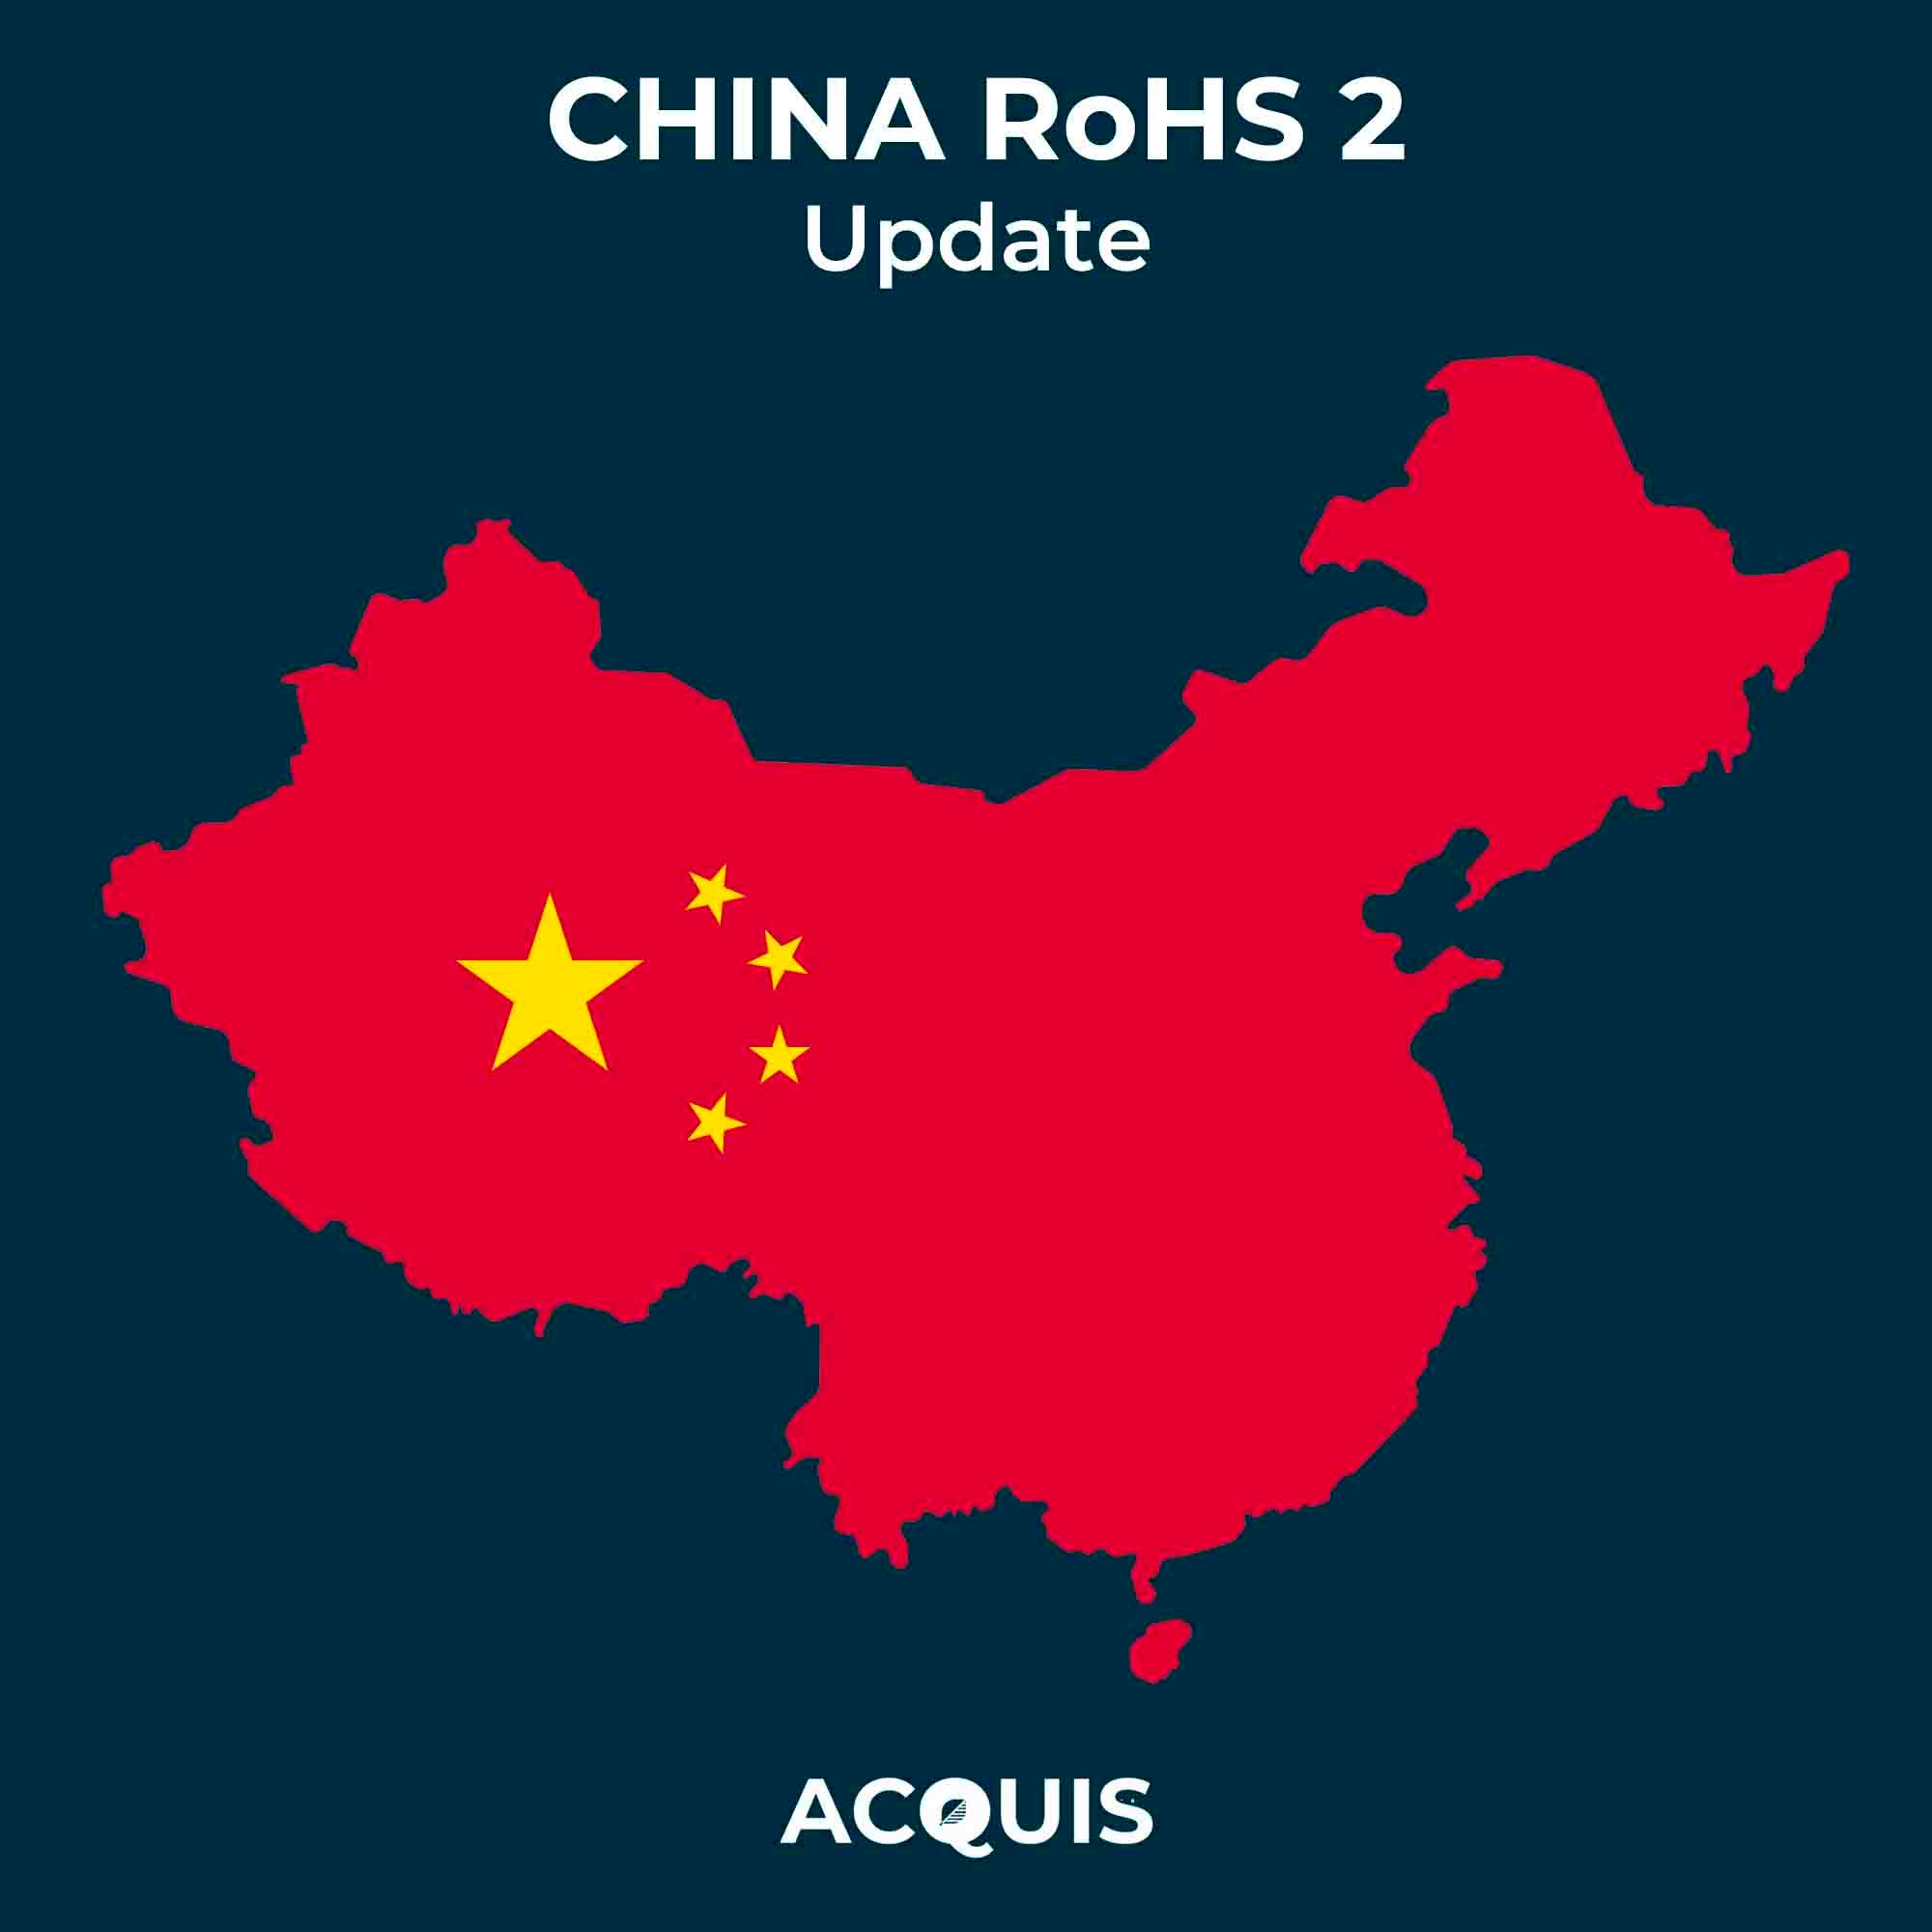 China RoHS 2